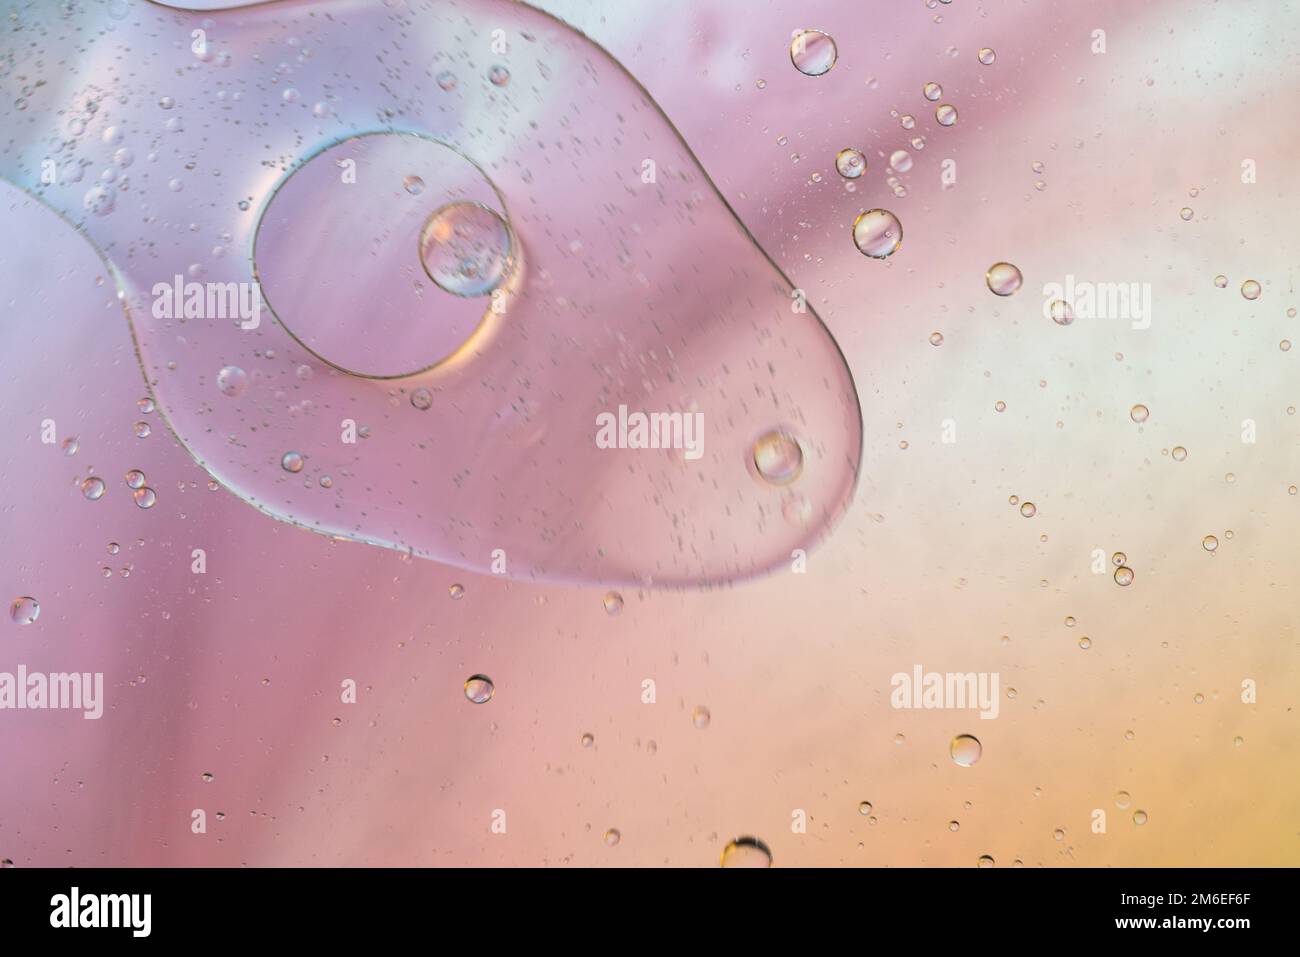 Defocalizzata color pastello sfondo astratto foto fatta con olio e acqua e sapone Foto Stock